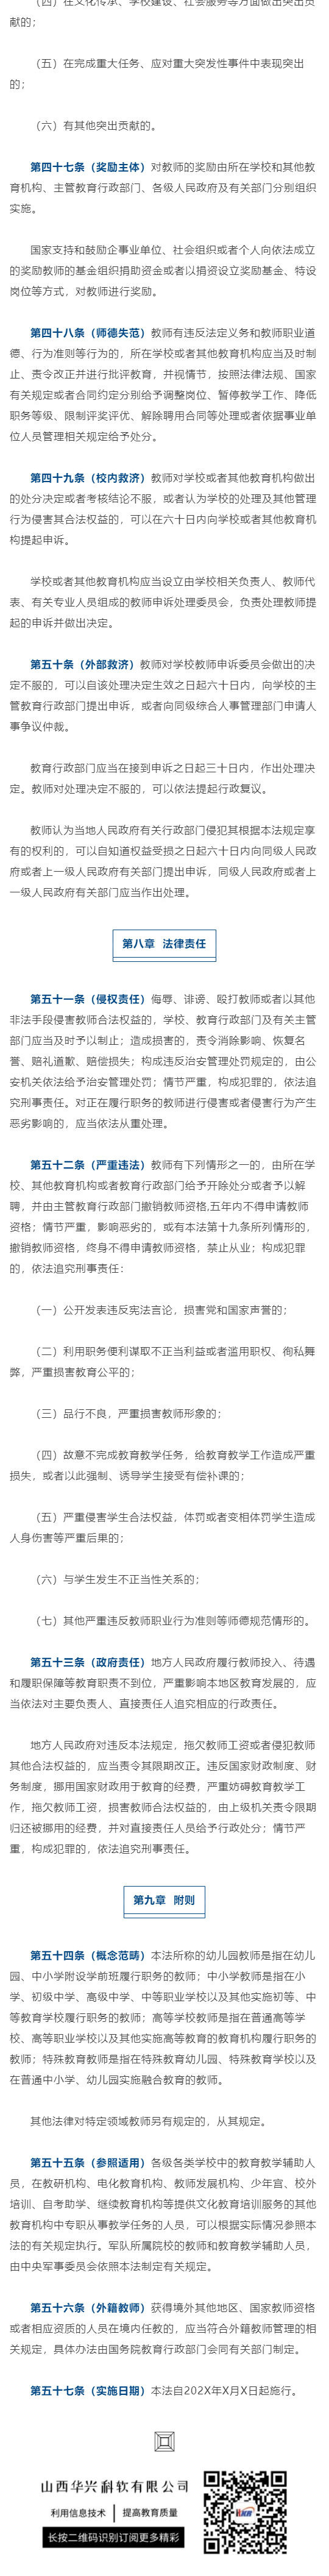 中华人民共和国教师法（修订草案）_壹伴长图5.jpg